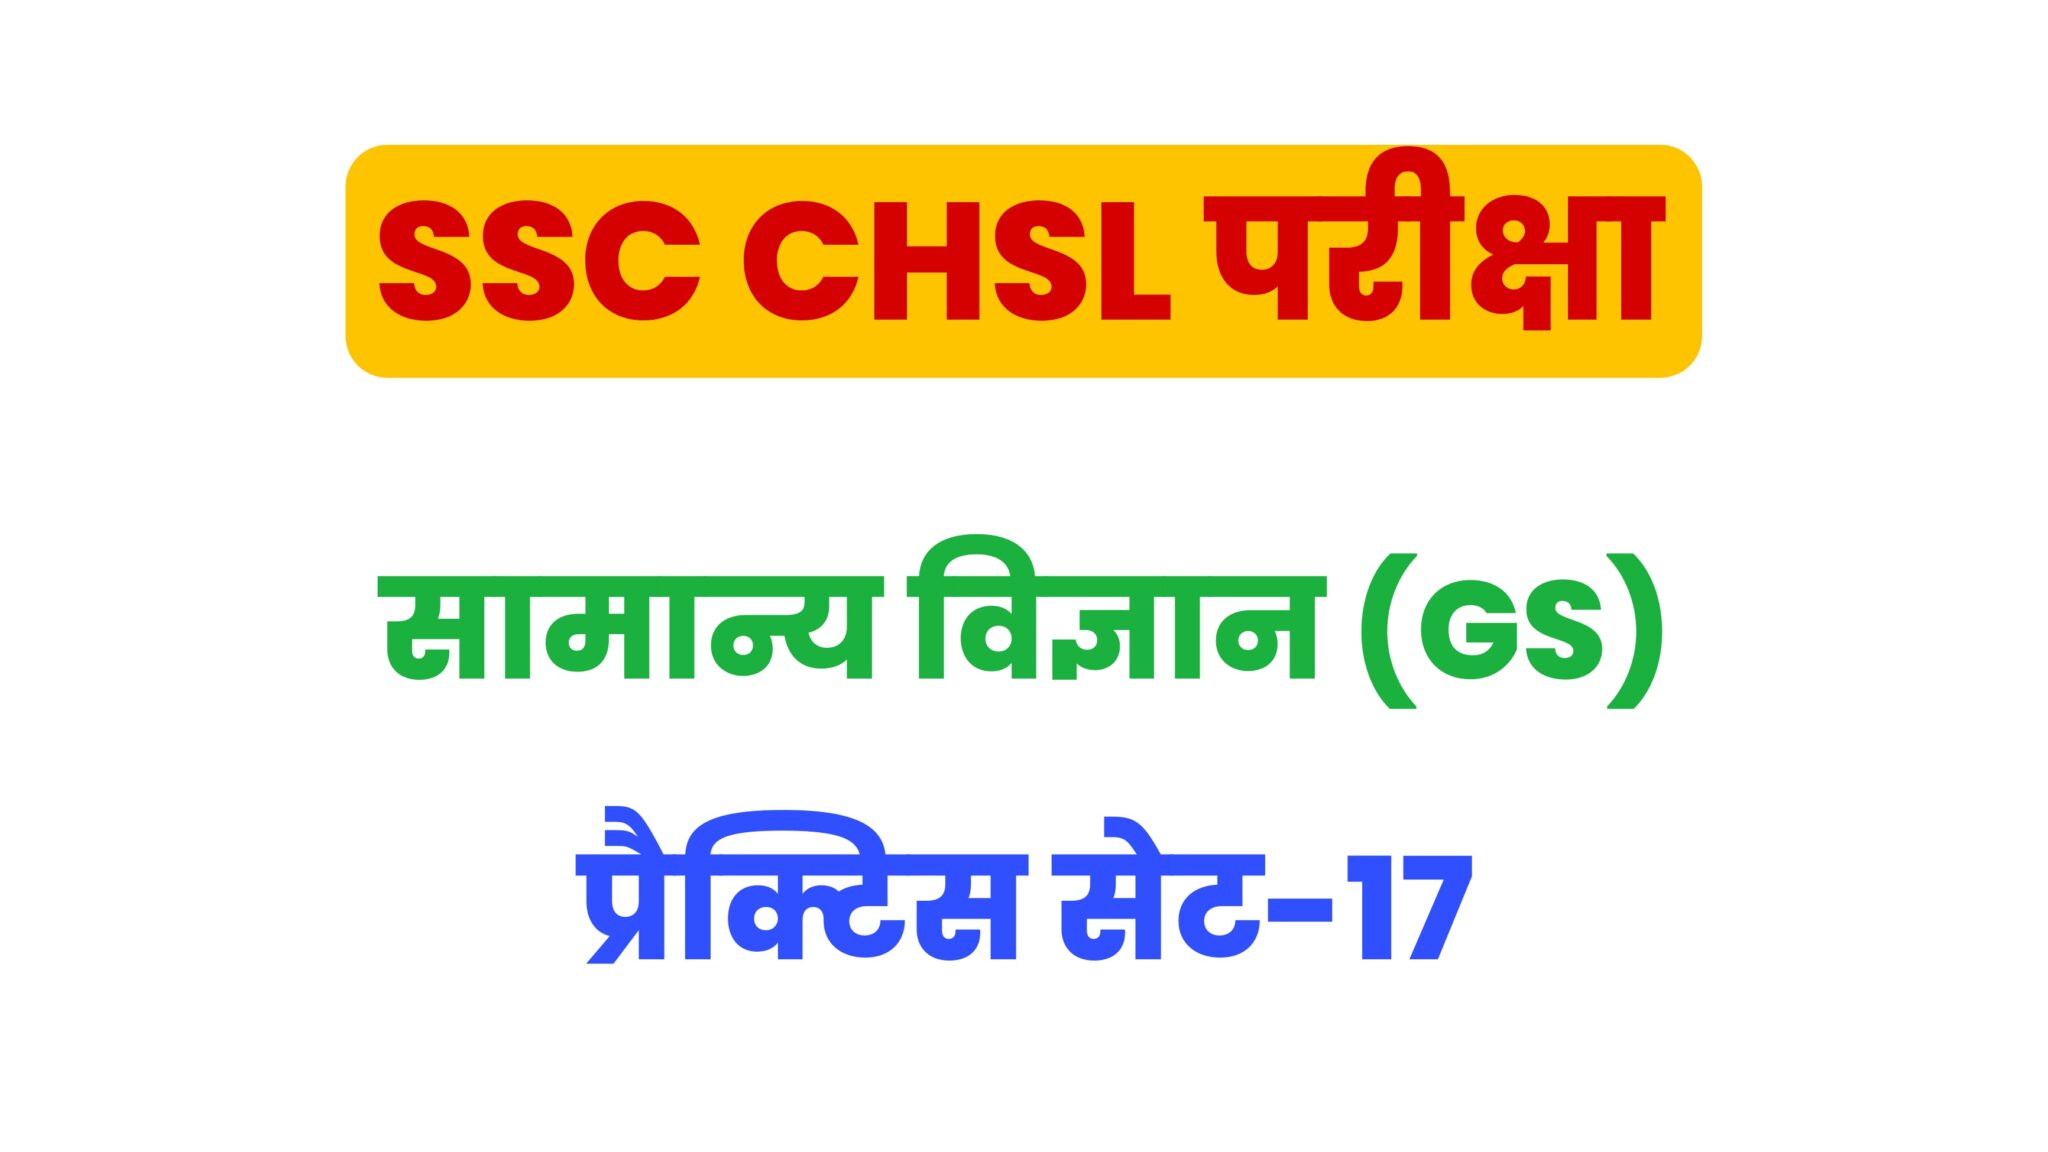 SSC CHSL General Science  प्रैक्टिस सेट 17 : सामान्य विज्ञान के 25 महत्वपूर्ण प्रश्न